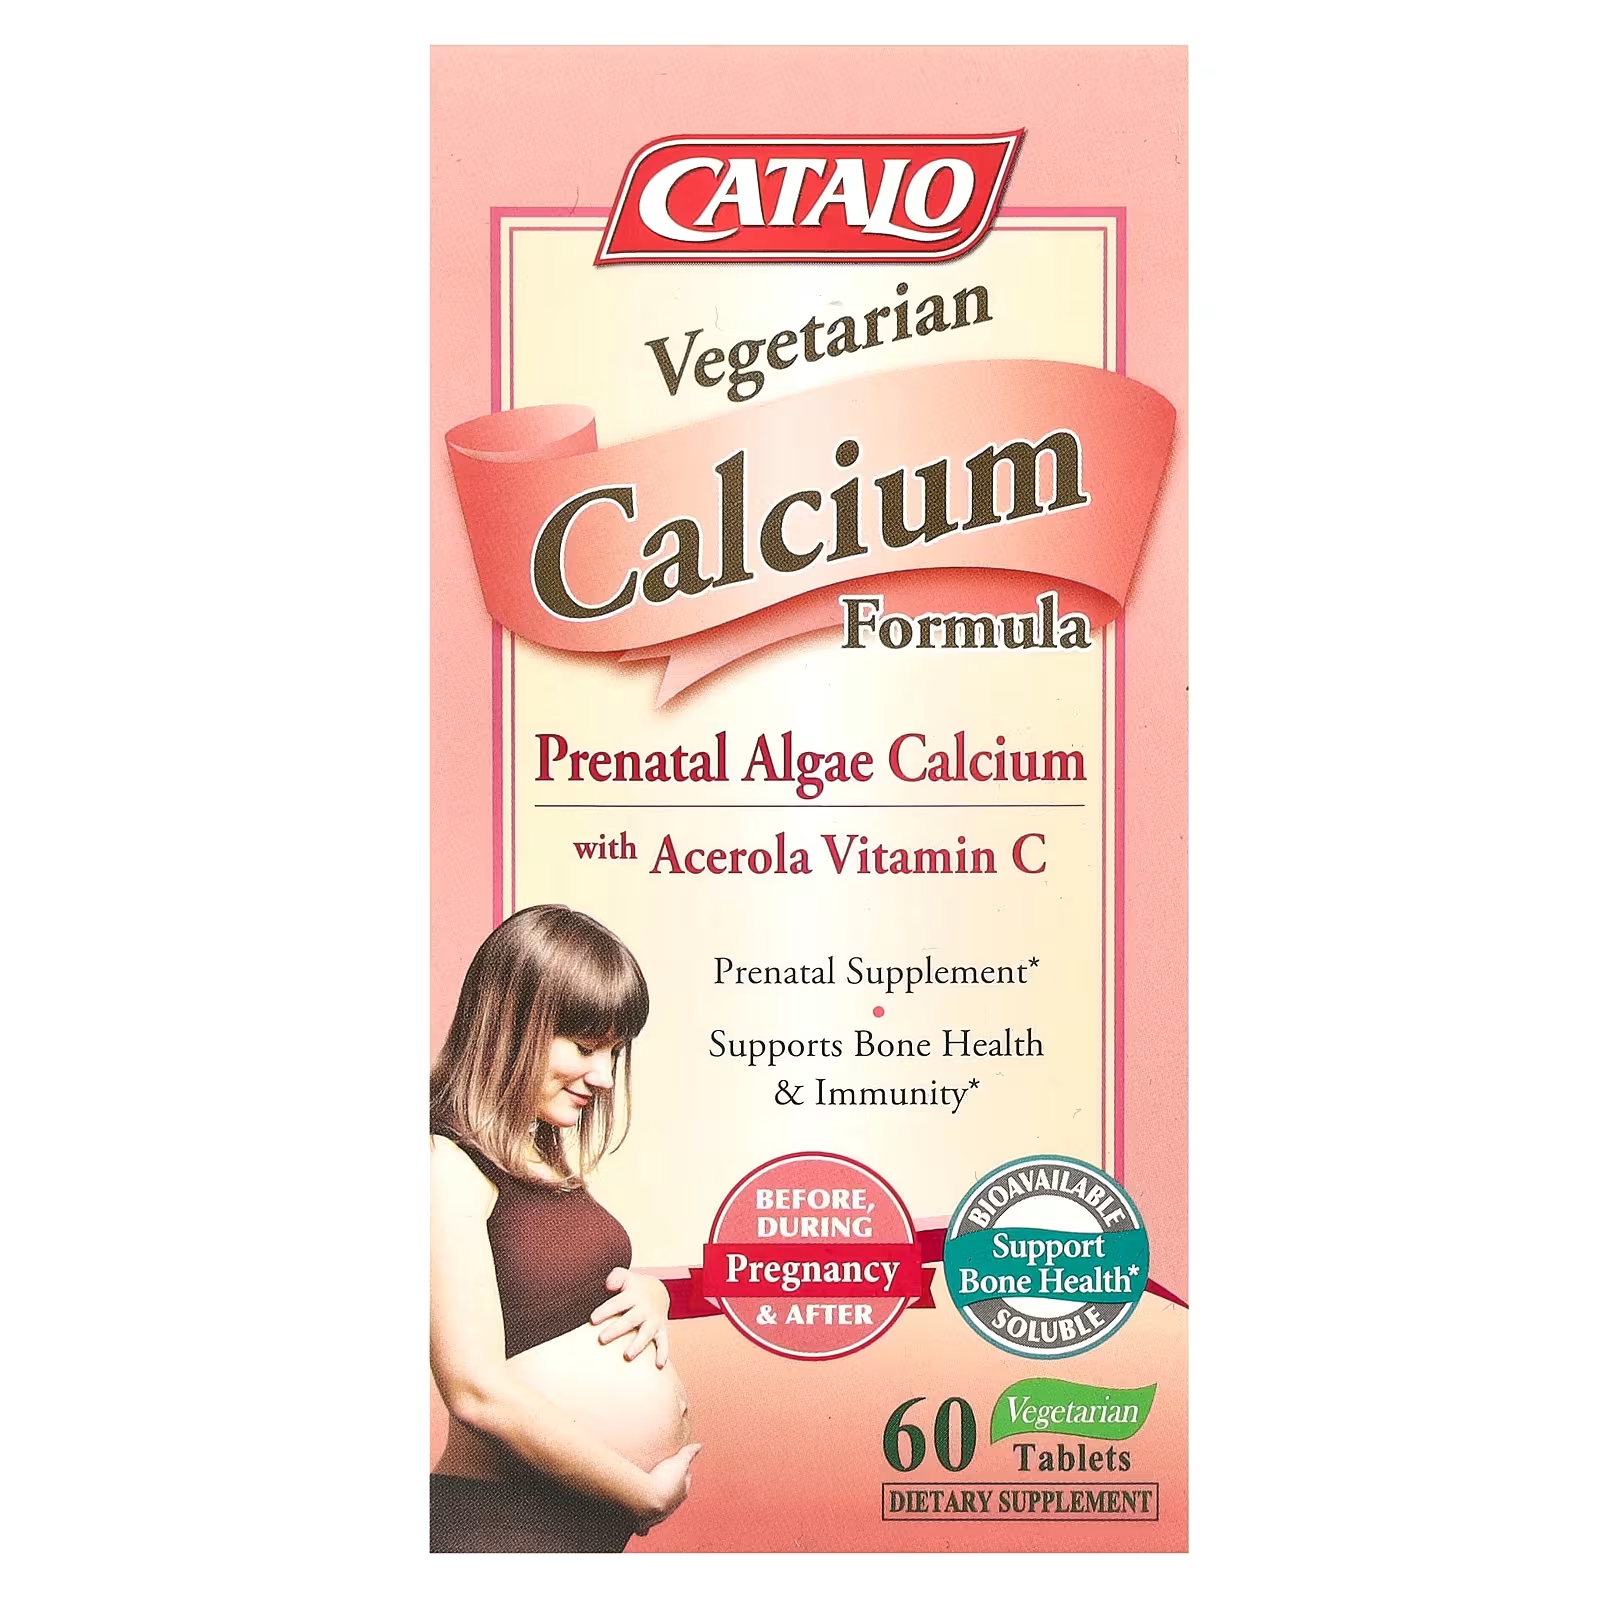 Вегетарианская формула кальция Catalo Naturals для беременных с витамином С, 60 вегетарианских таблеток catalo naturals формула баланса флоры для женщин 30 вегетарианских капсул